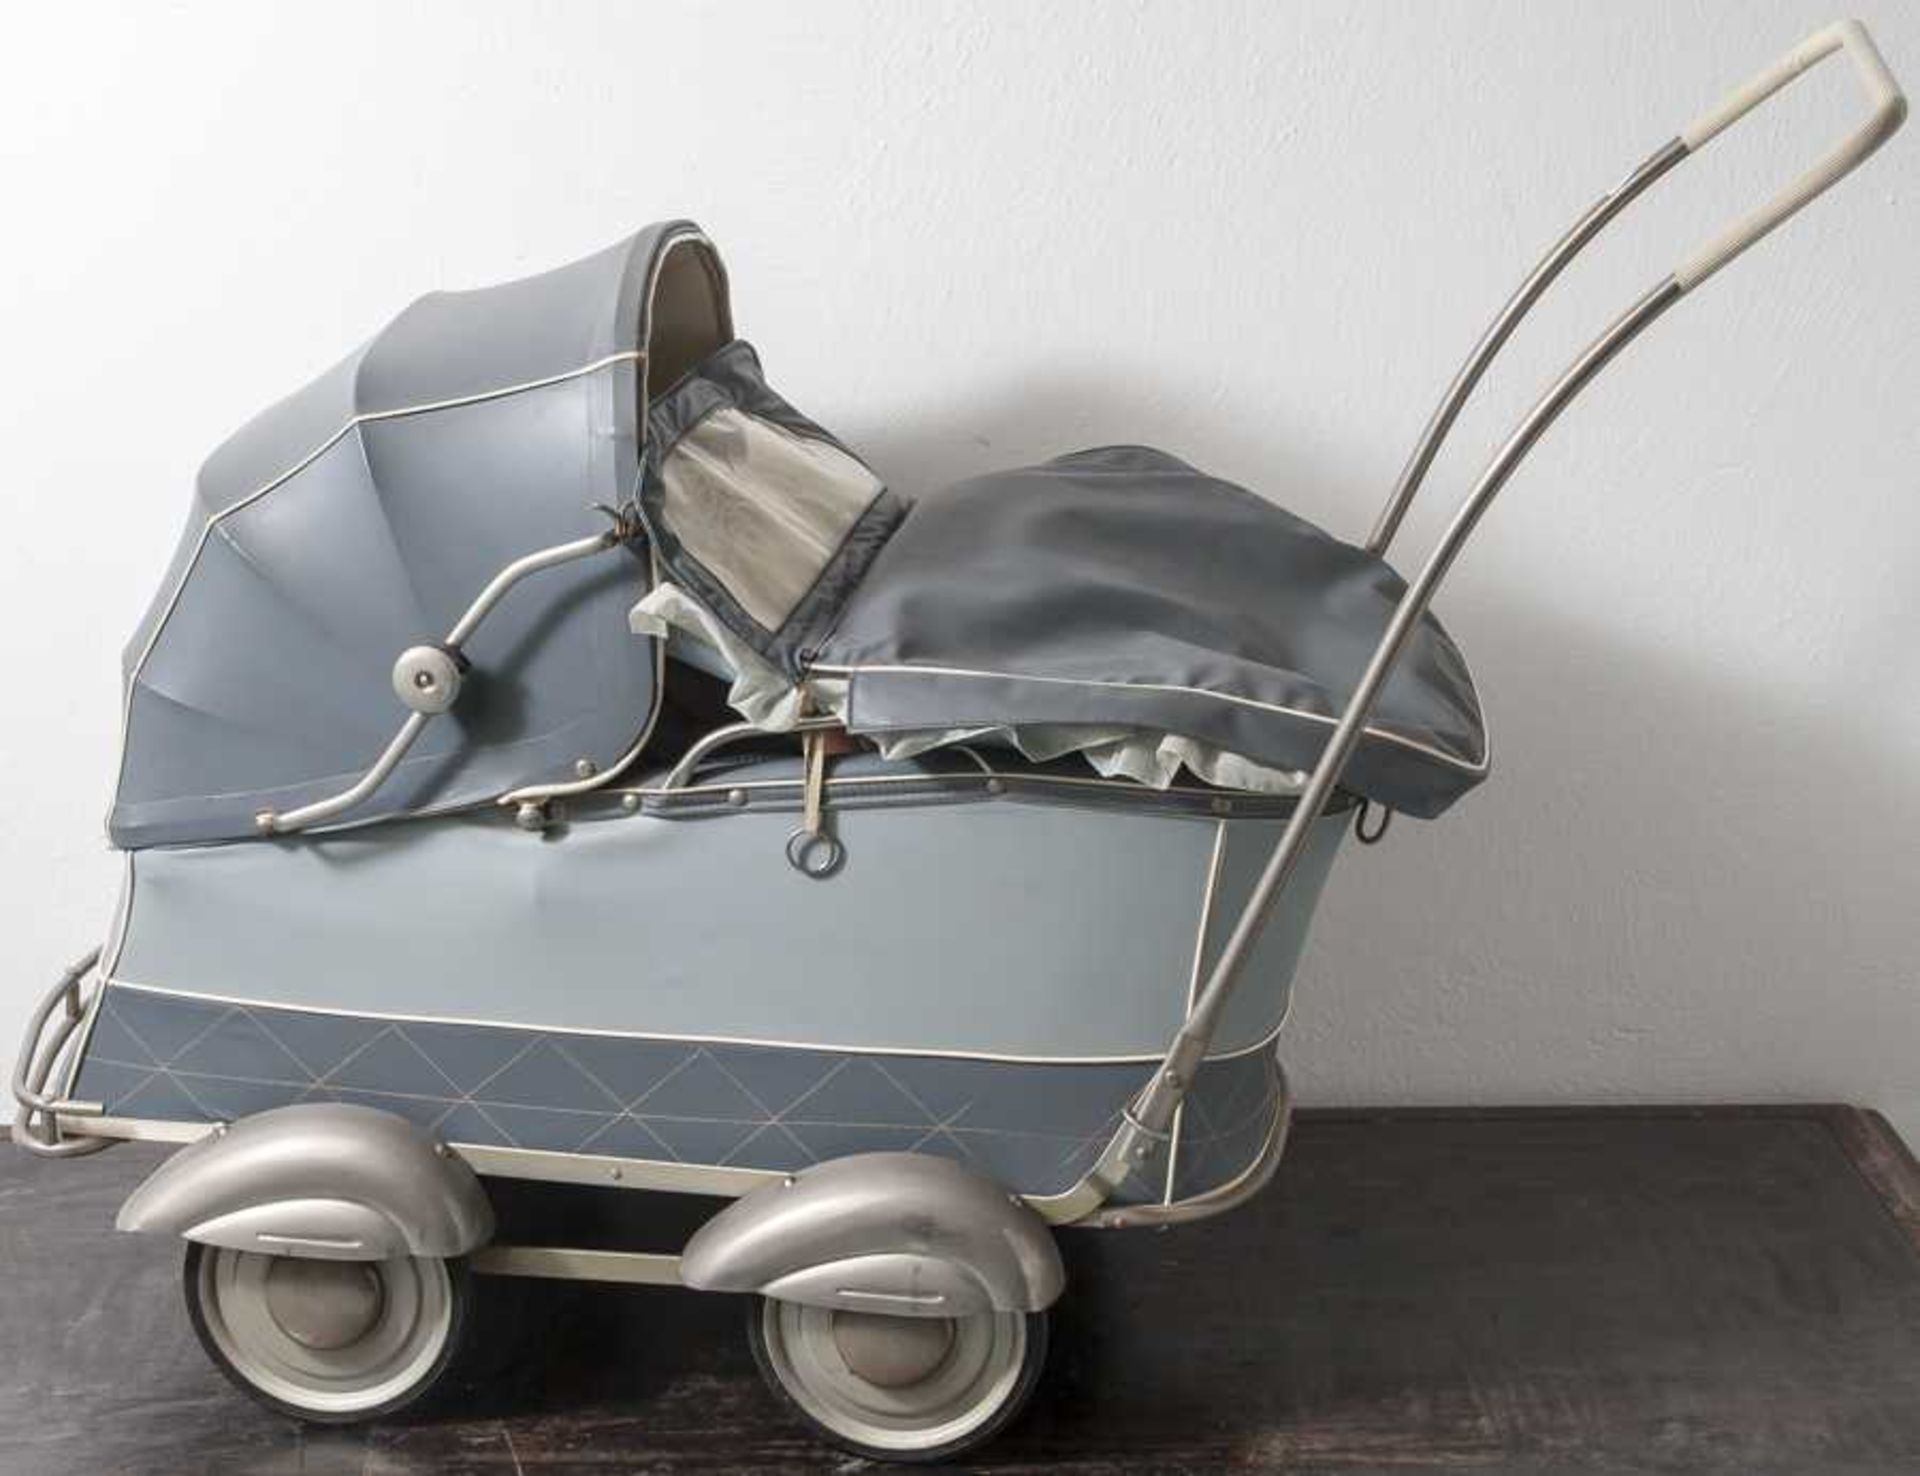 Puppenwagen, Herlag, 1950er Jahre, Wanne und Verdeck aus graublauem Kunstleder(zweifarbig),